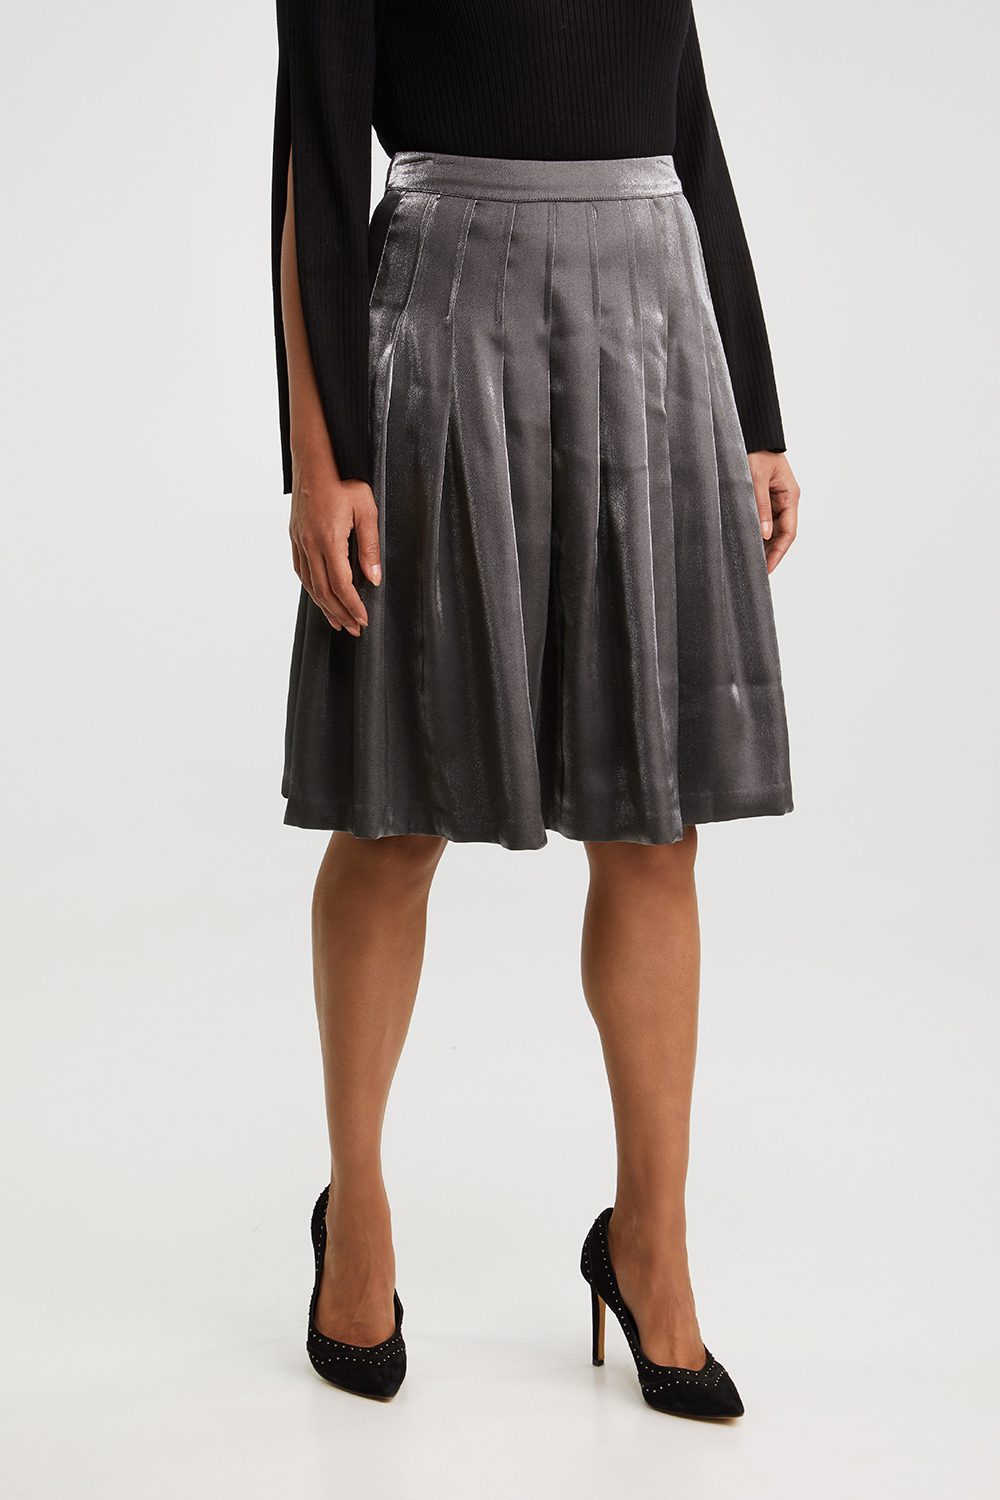 metallic pleated skirt womens